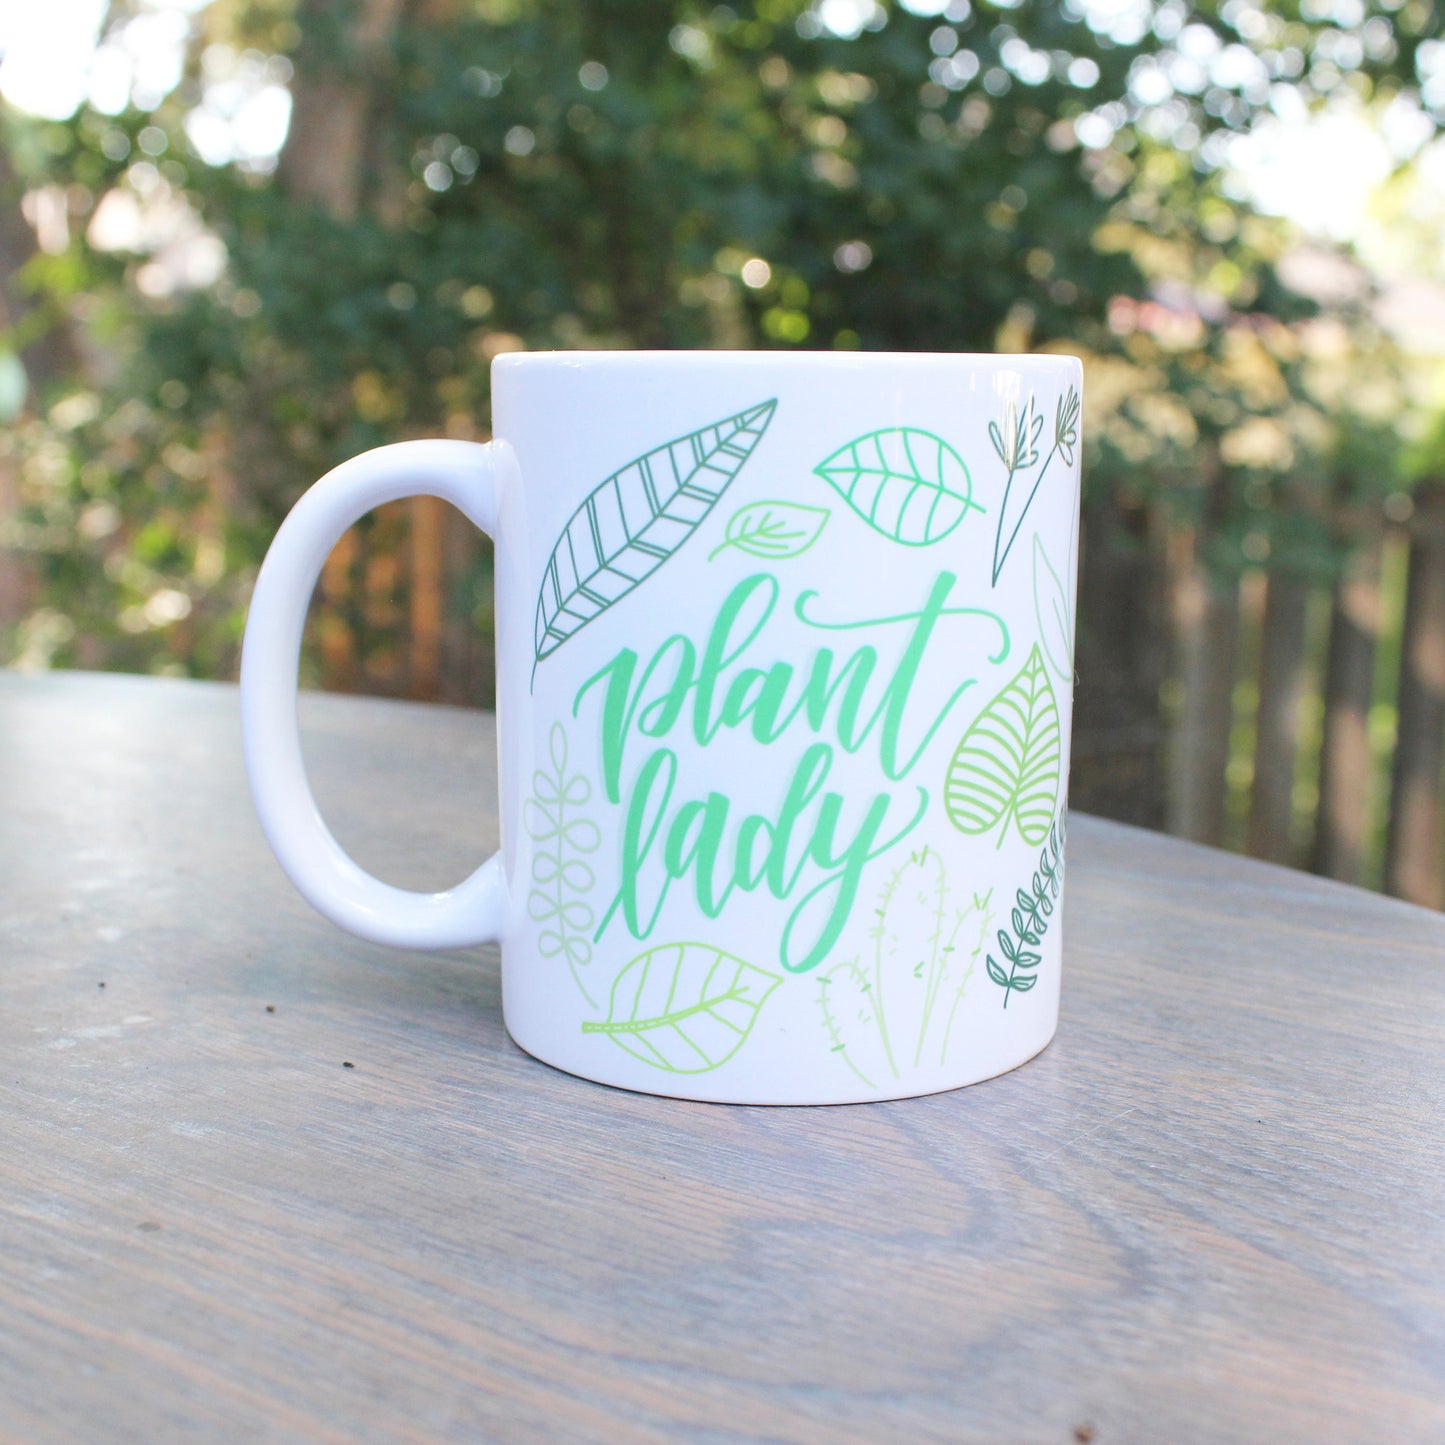 Crazy plant lady mug